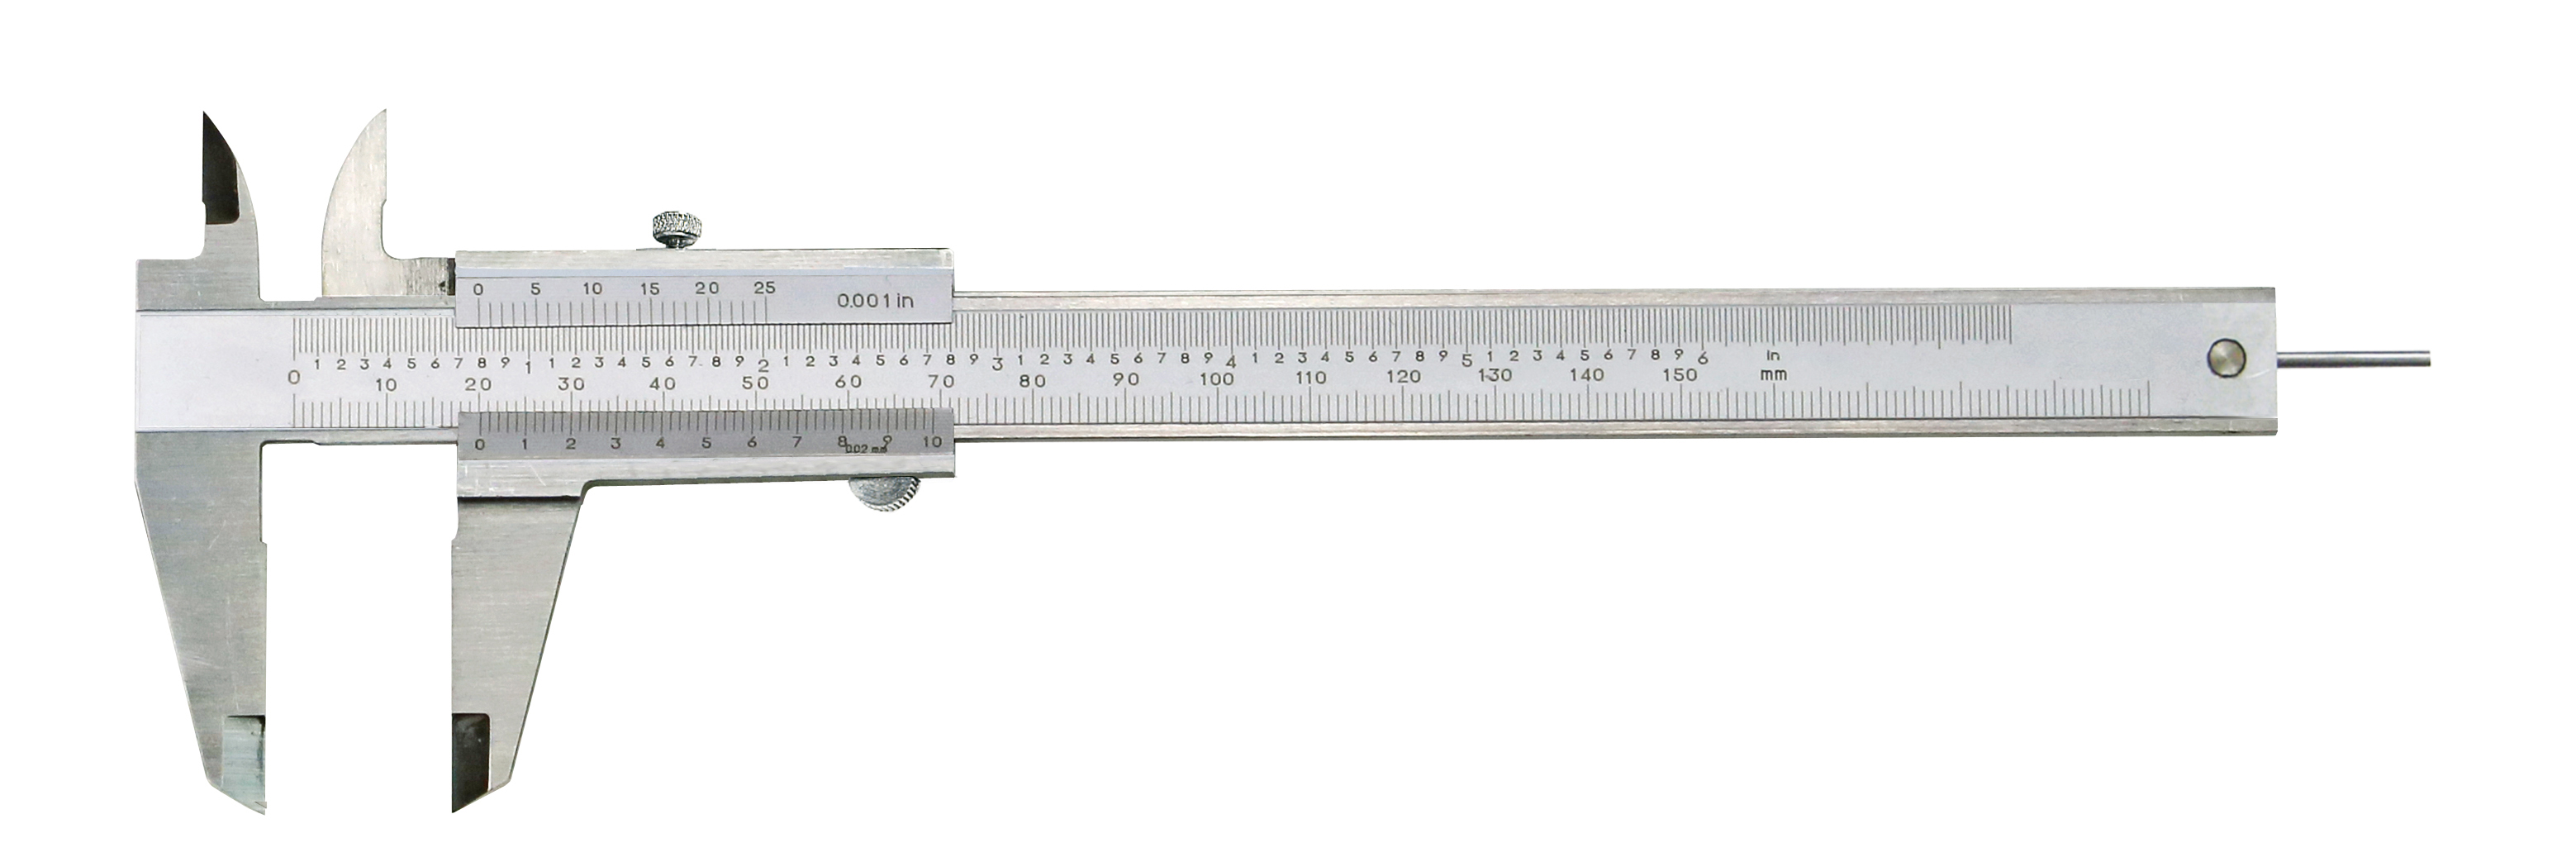 Messschieber analog 0 - 150 mm mit rundem Tiefenmaß Ø 2 mm DIN 862